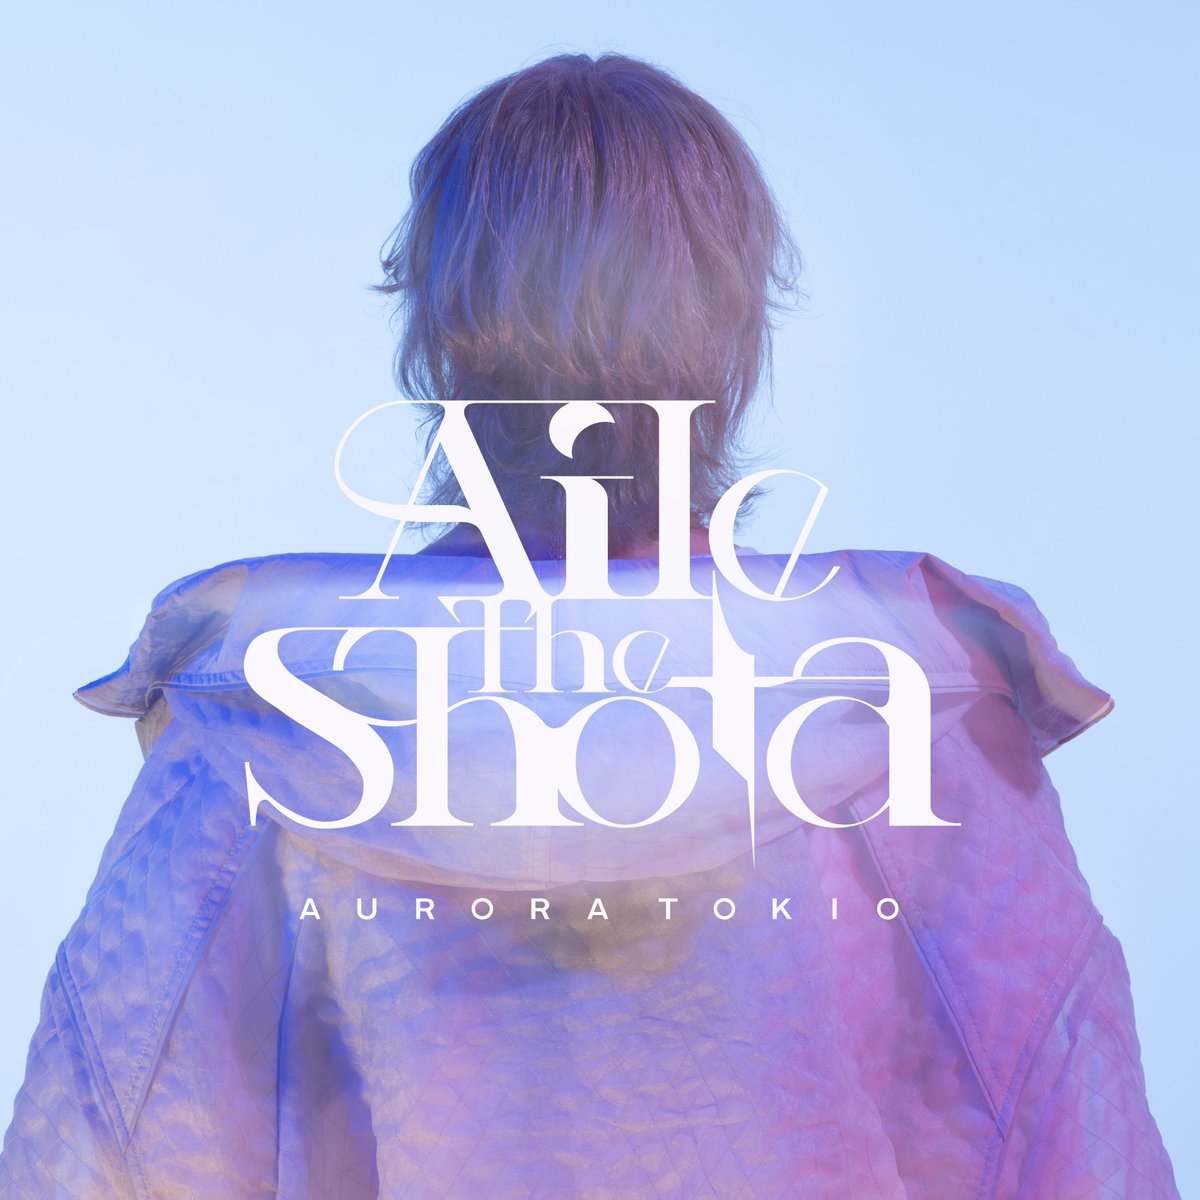 Aile The Shota / AURORA TOKIO#AmazonMusic のプレイリストにて選曲！🎧Trending Today🎧Brand New Music#AileTheShota#AURORATOKIO@amazonmusicjp 